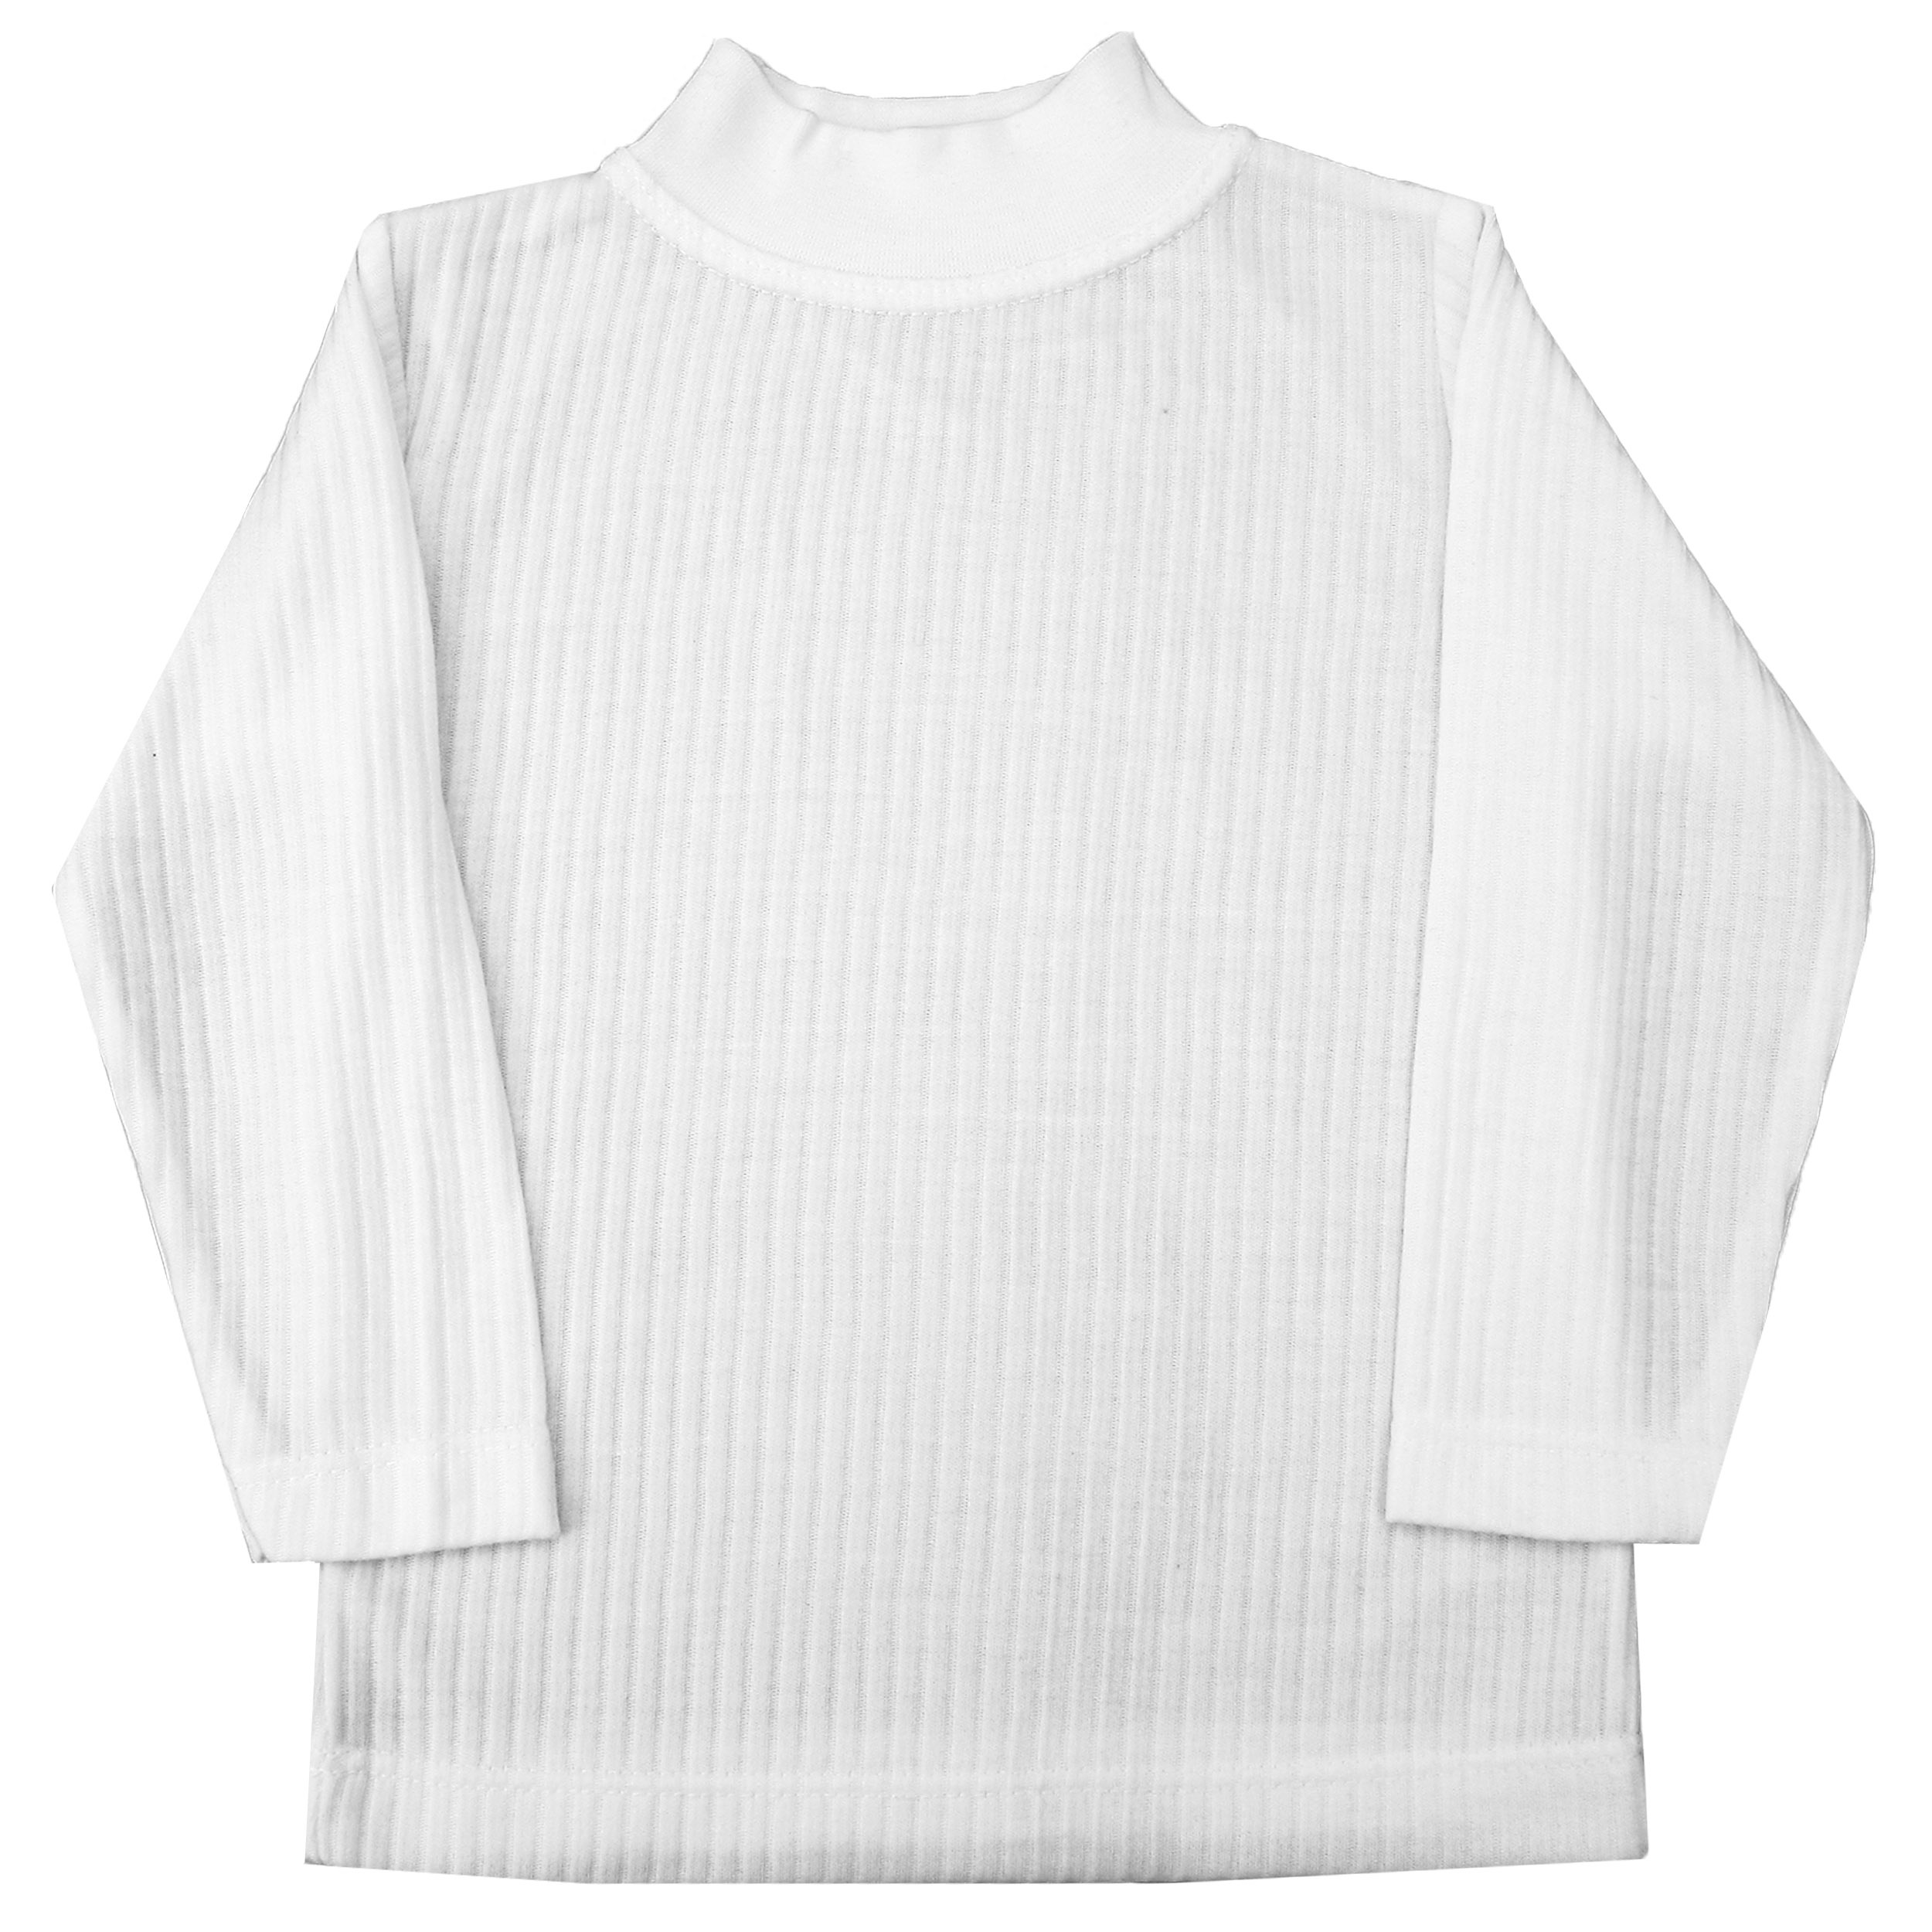 تی شرت نوزاد کد SH-1 رنگ سفید